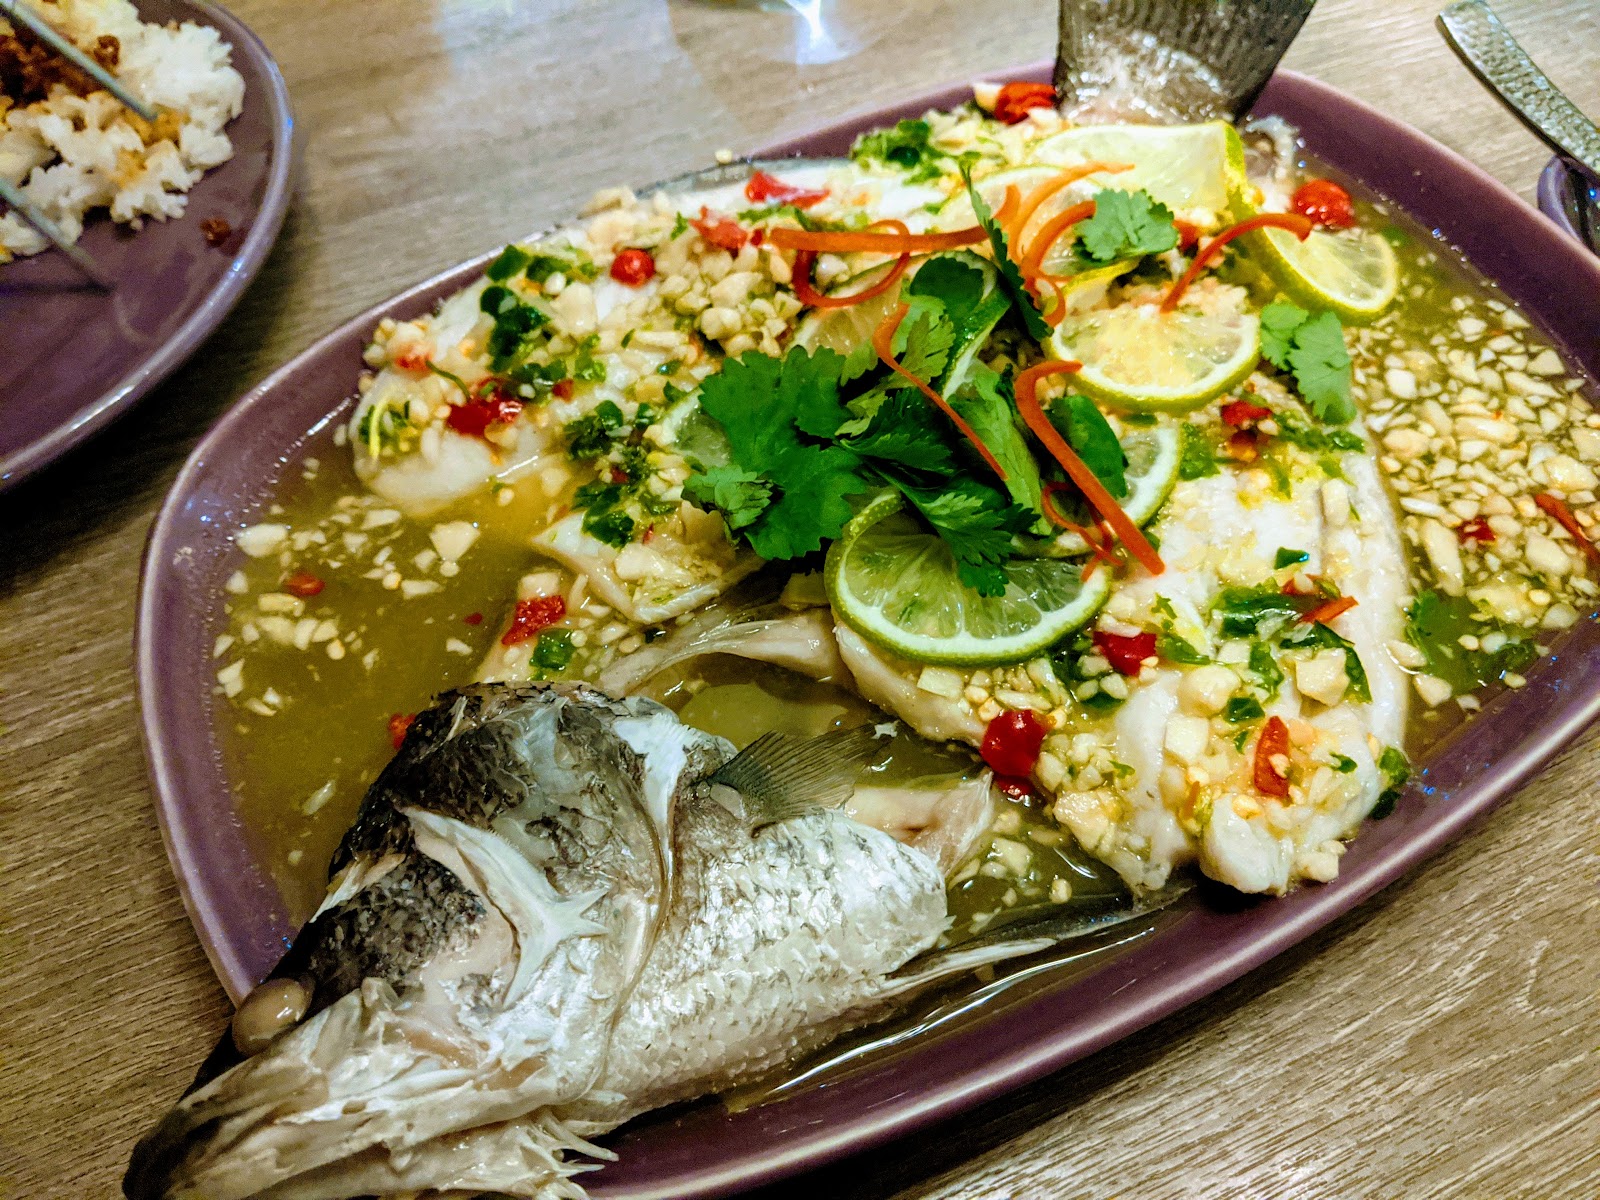 Nara Thai Cuisine 檸檬魚